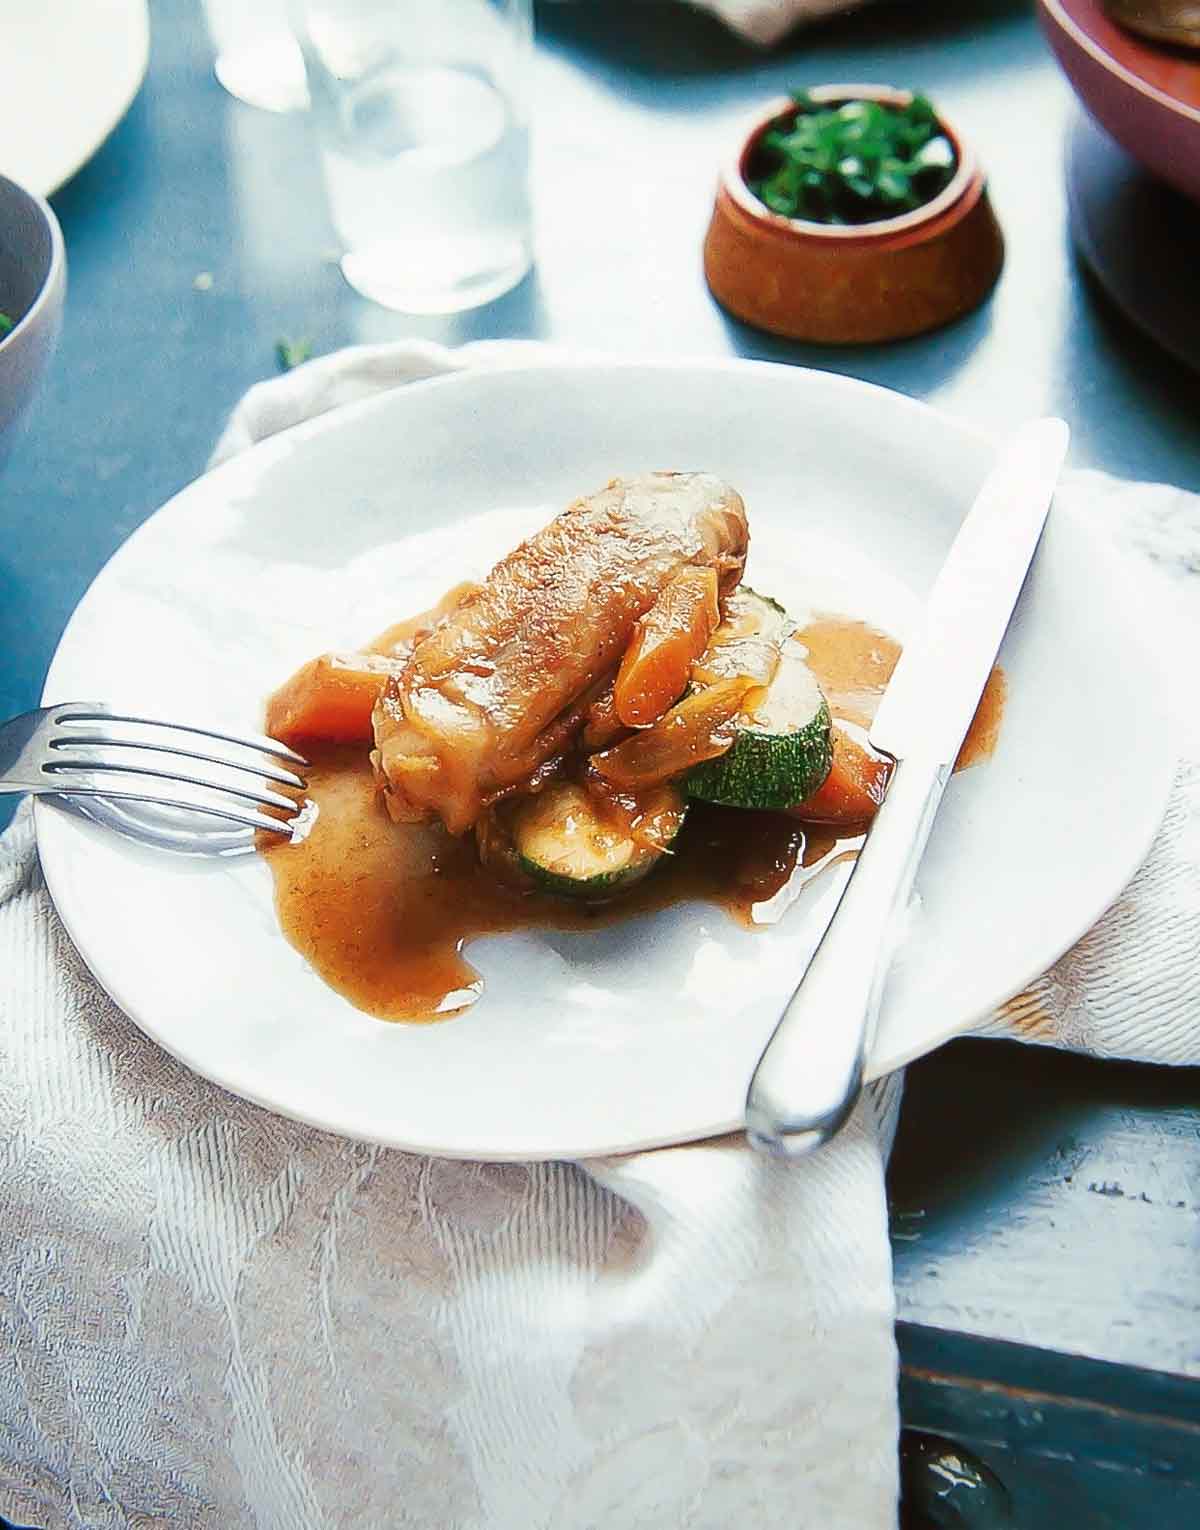 En vit tallrik på ett bord med kniv och gaffel, med en portion marockansk bräserad kyckling med dadlar och grönsaker, inklusive morötter och zucchini.